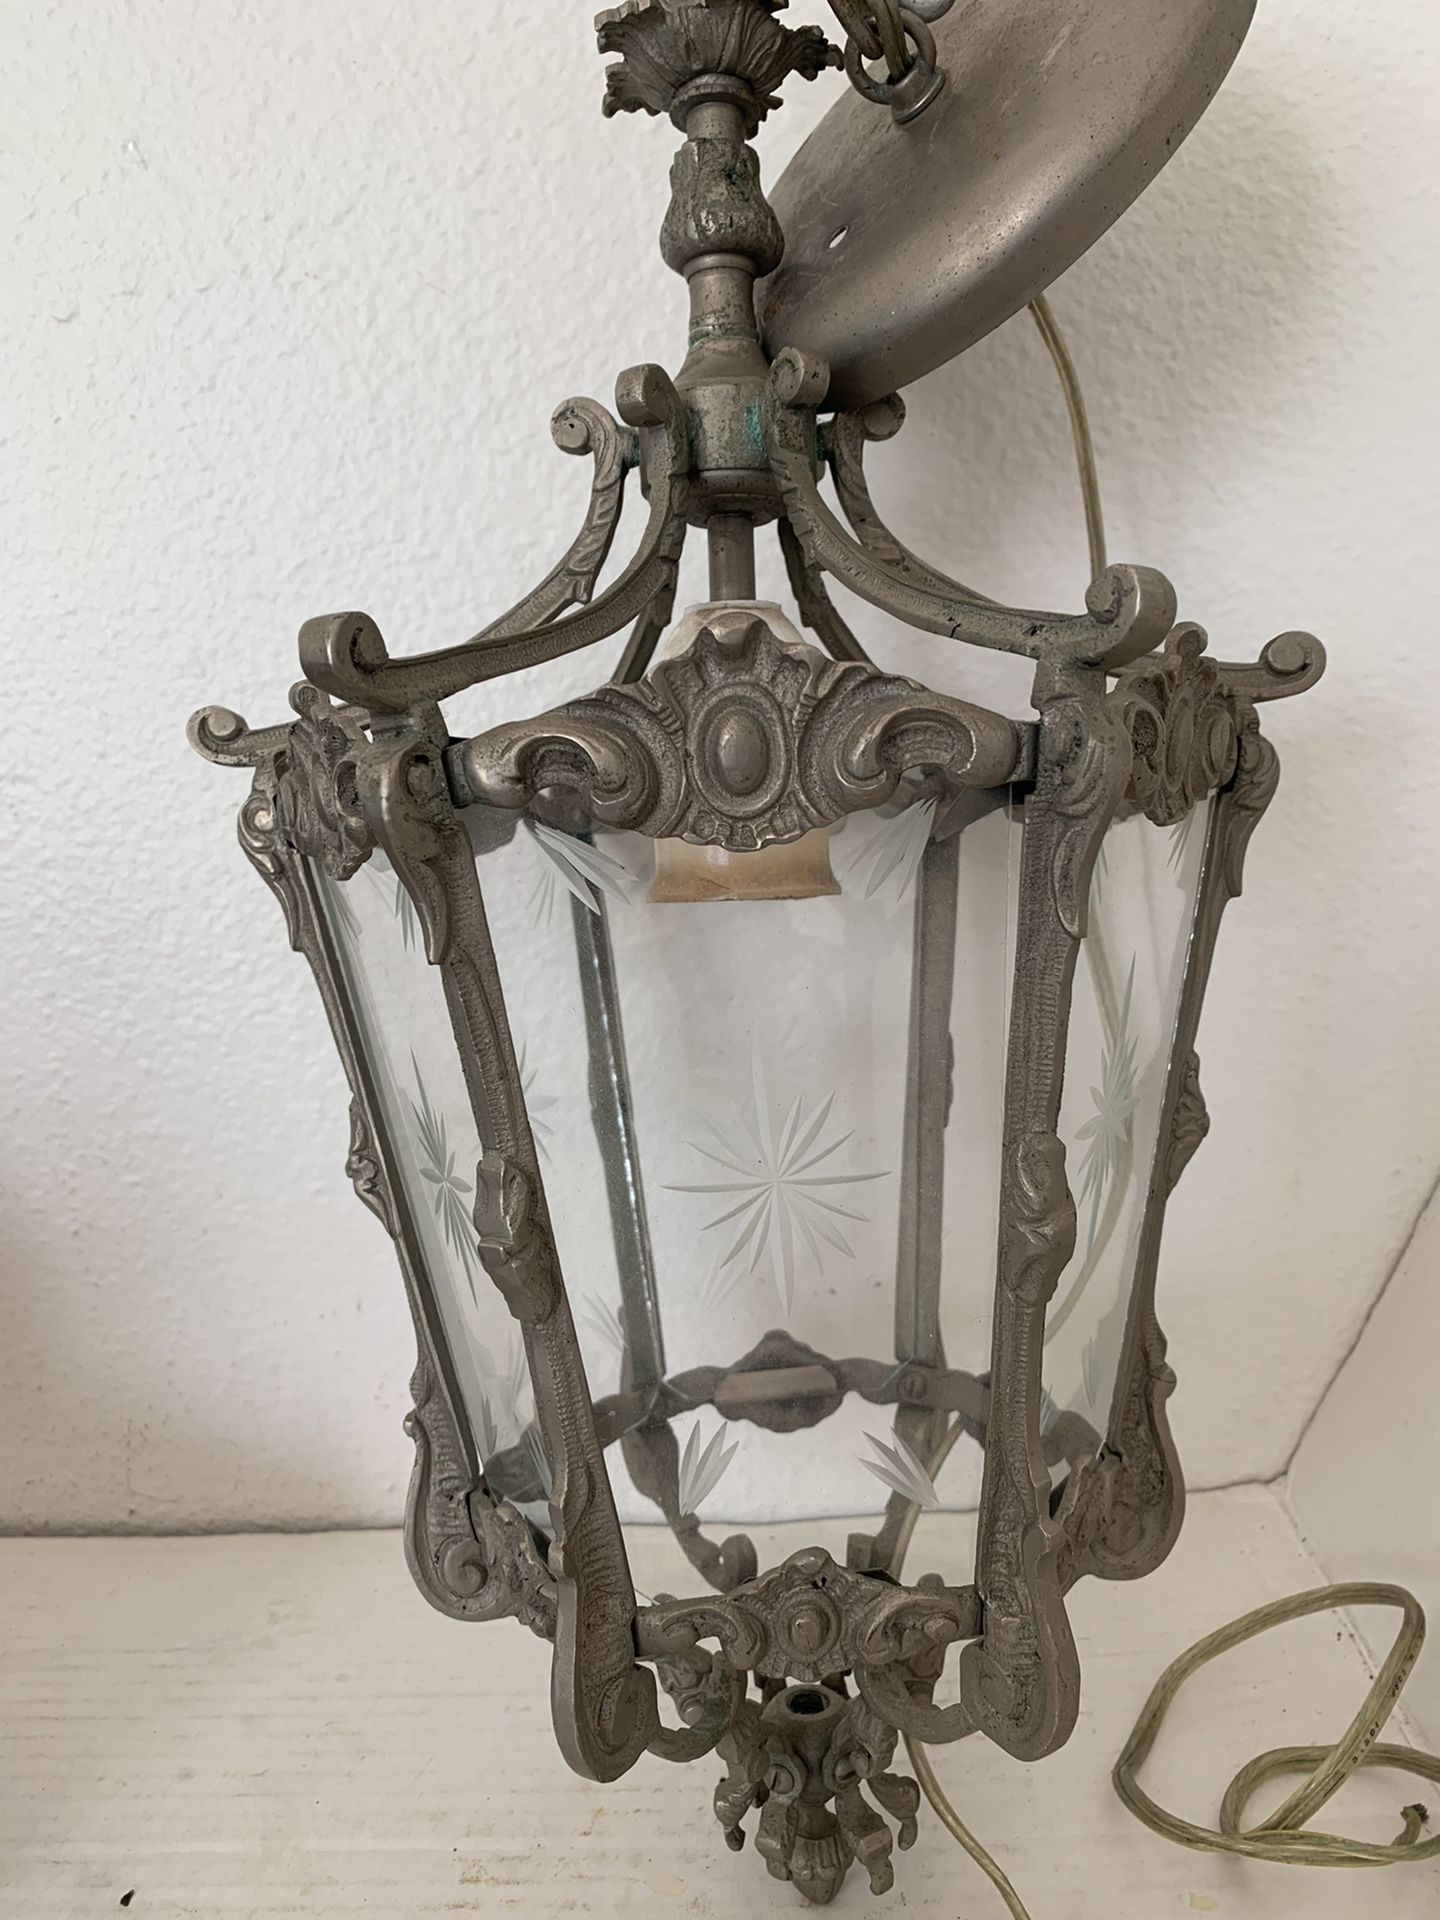 Beveled Glass Ceiling Lantern Chandelier Vintage Ornate